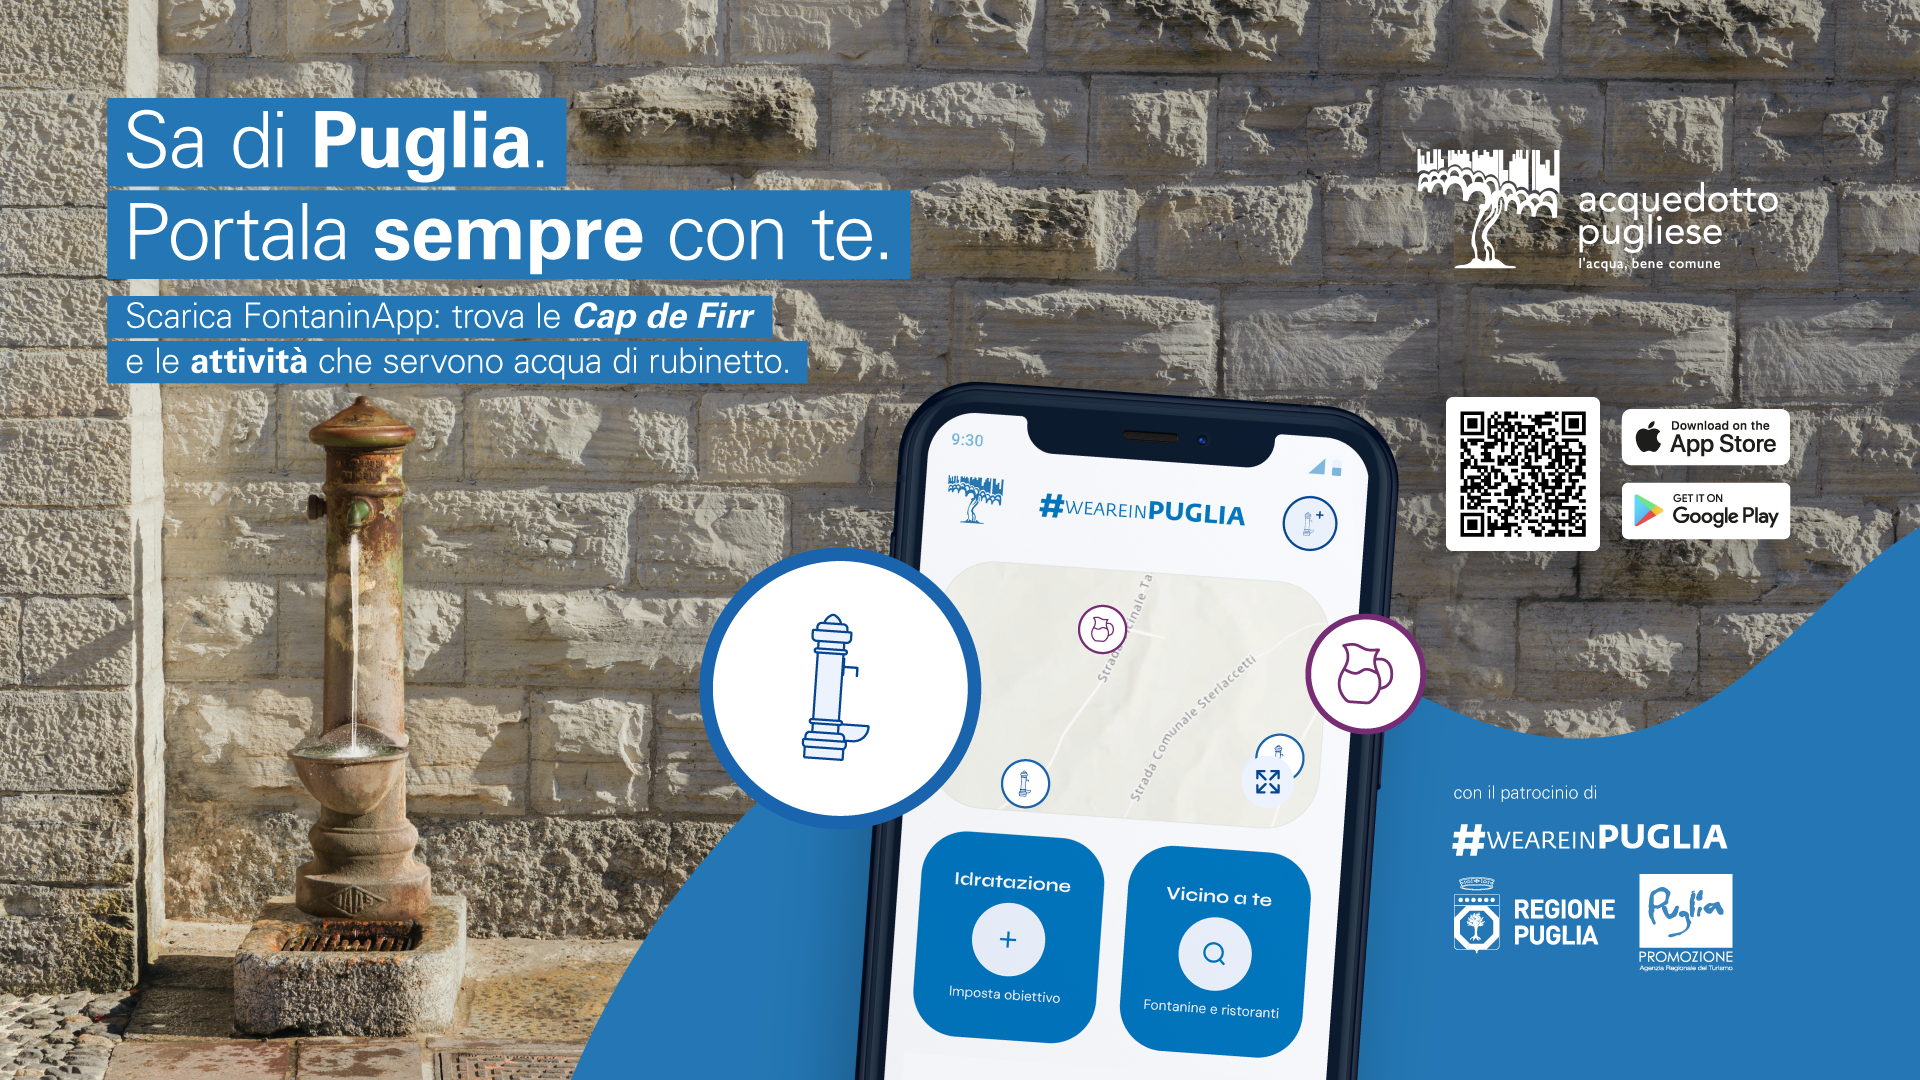 FontaninApp 3.0, l'acqua che sa di Puglia a portata di smartphone